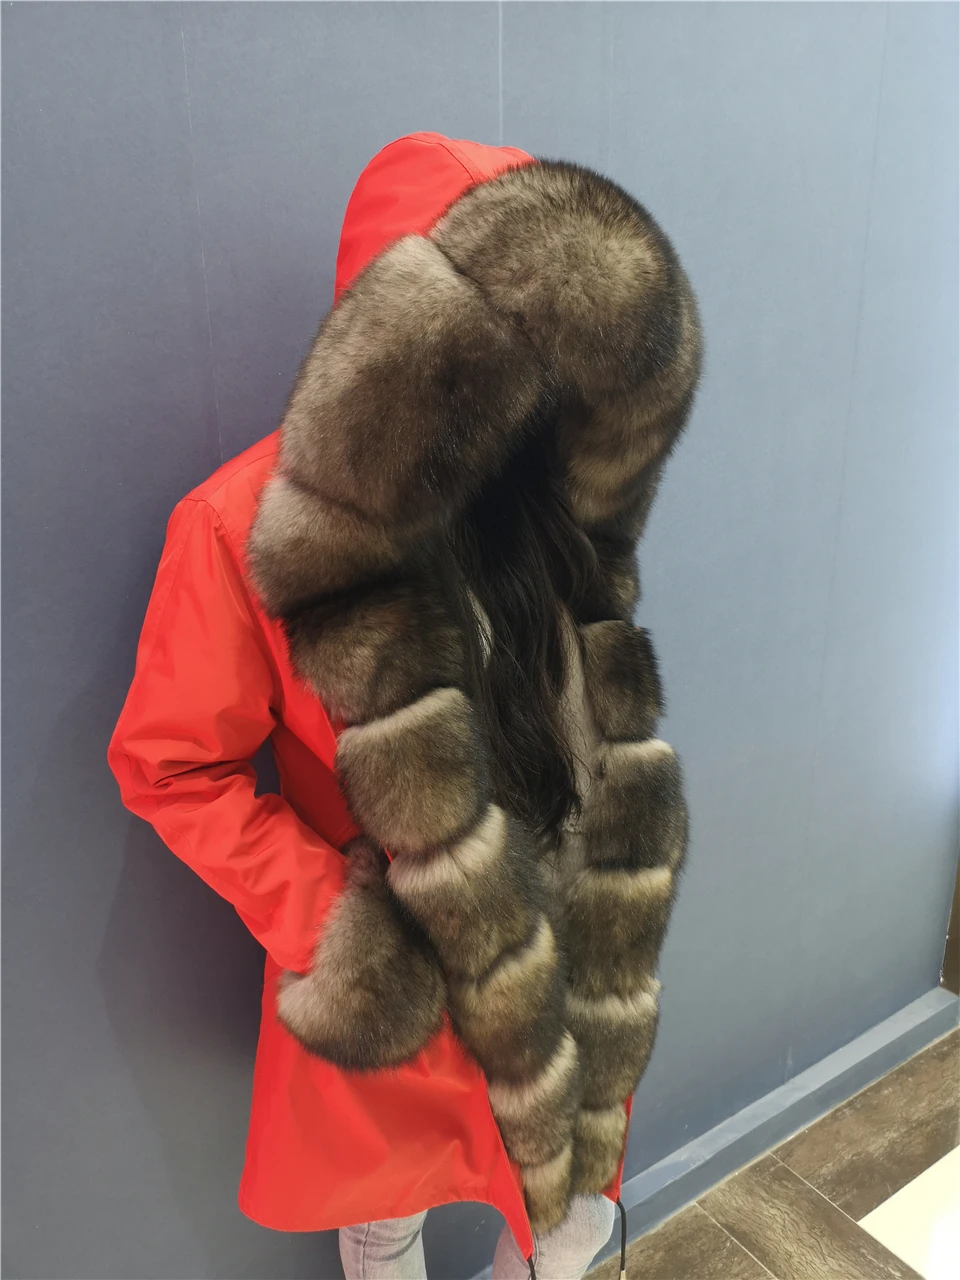 Парка с мехом Женская парка пальто из натурального меха зимняя куртка с воротником из лисьего меха женская шуба с капюшоном новая норковая шуба